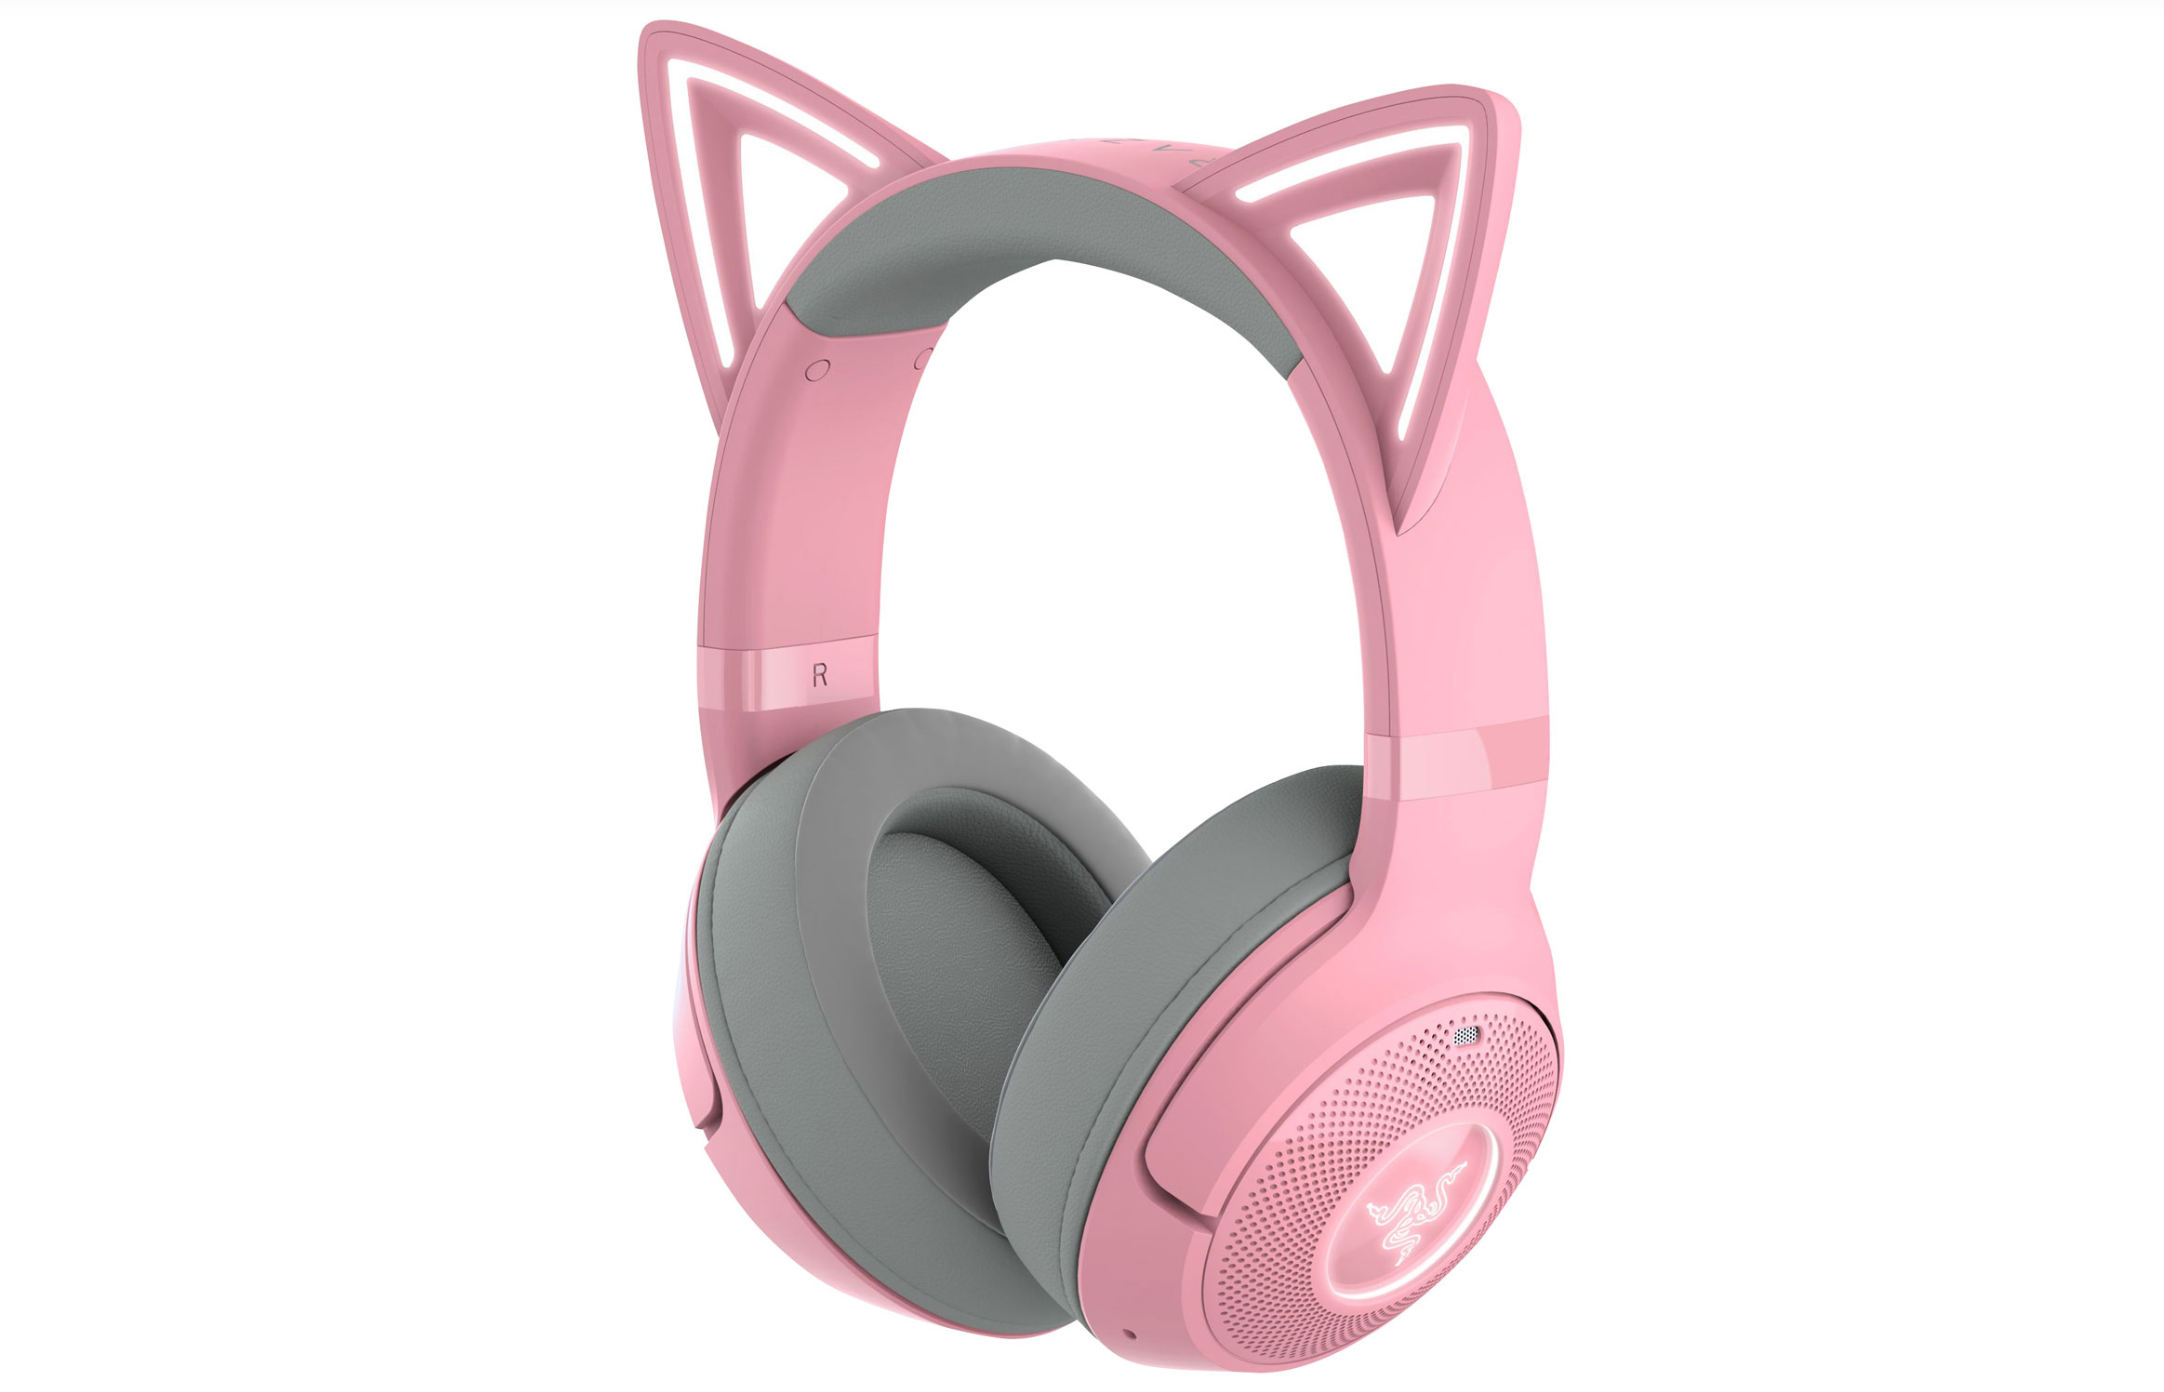 Razer casque rose avec oreille de chat